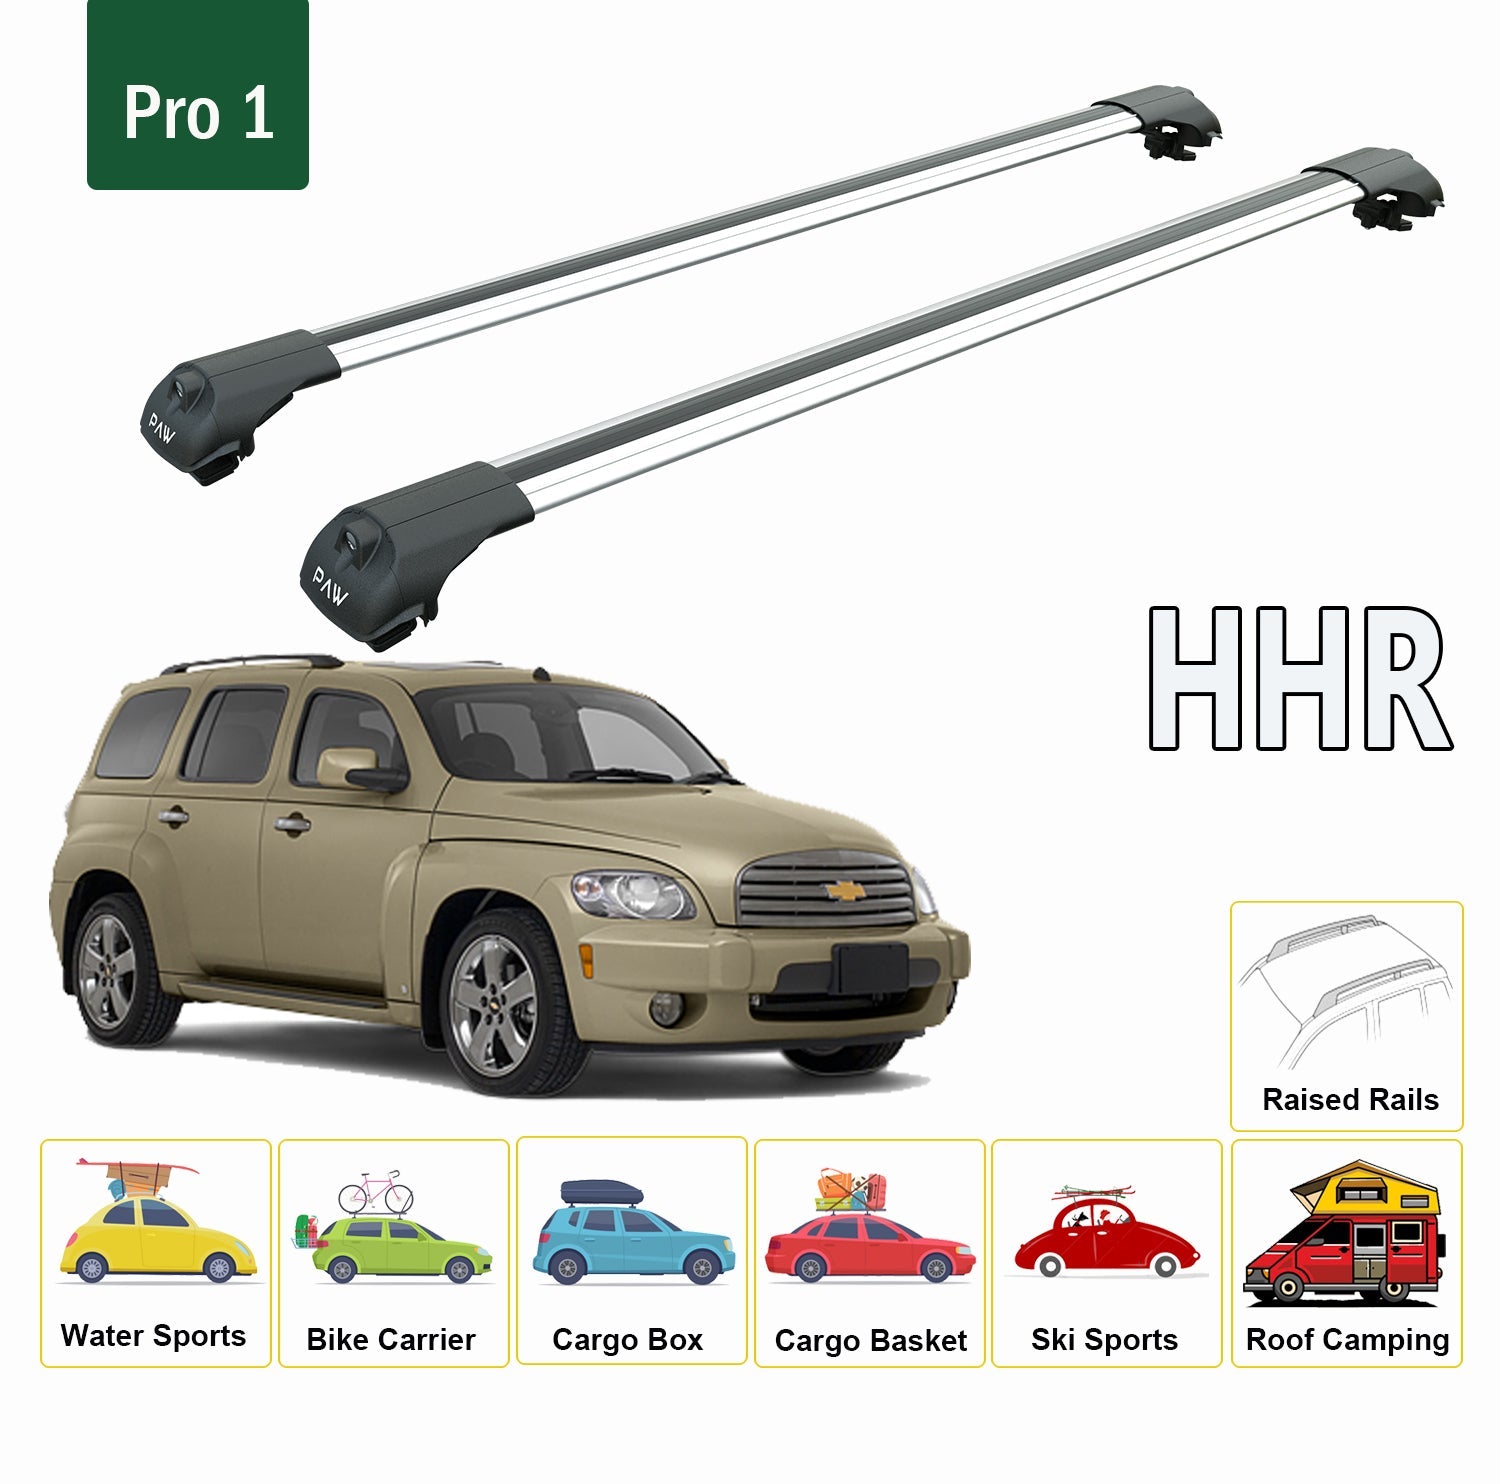 For Chevrolet HHR 2006-2011 Roof Rack System, Aluminium Cross Bar, Metal Bracket, Raised Rail, Black